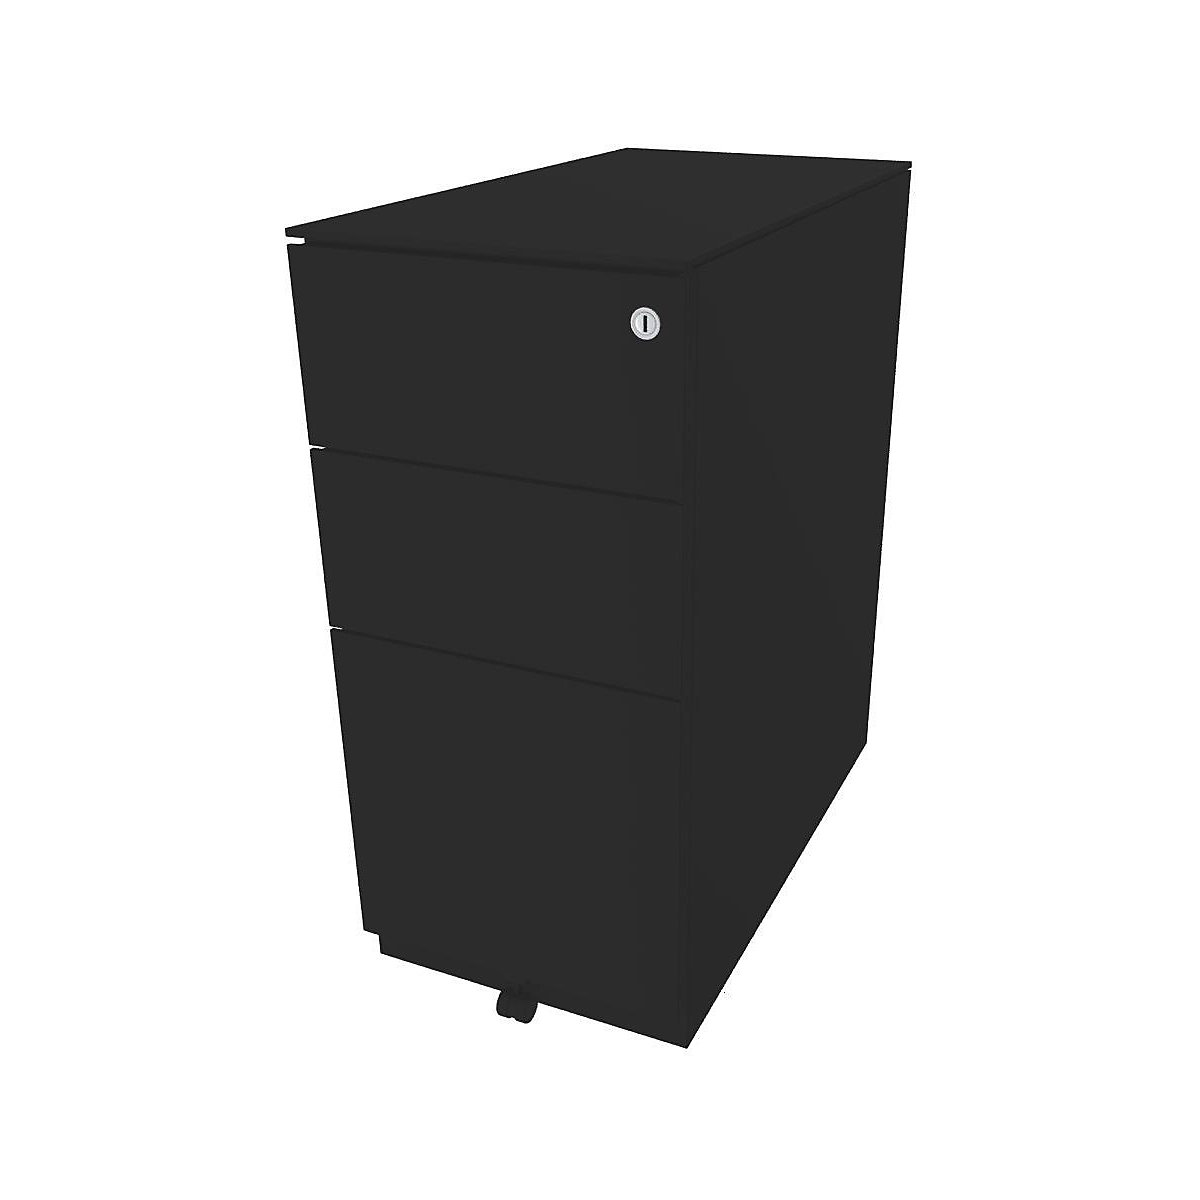 Pojazdný kontajner Note™, s 2 univerzálnymi zásuvkami, 1 závesná registratúra – BISLEY, v x š x h 652 x 300 x 565 mm, s hornou doskou, čierna-11